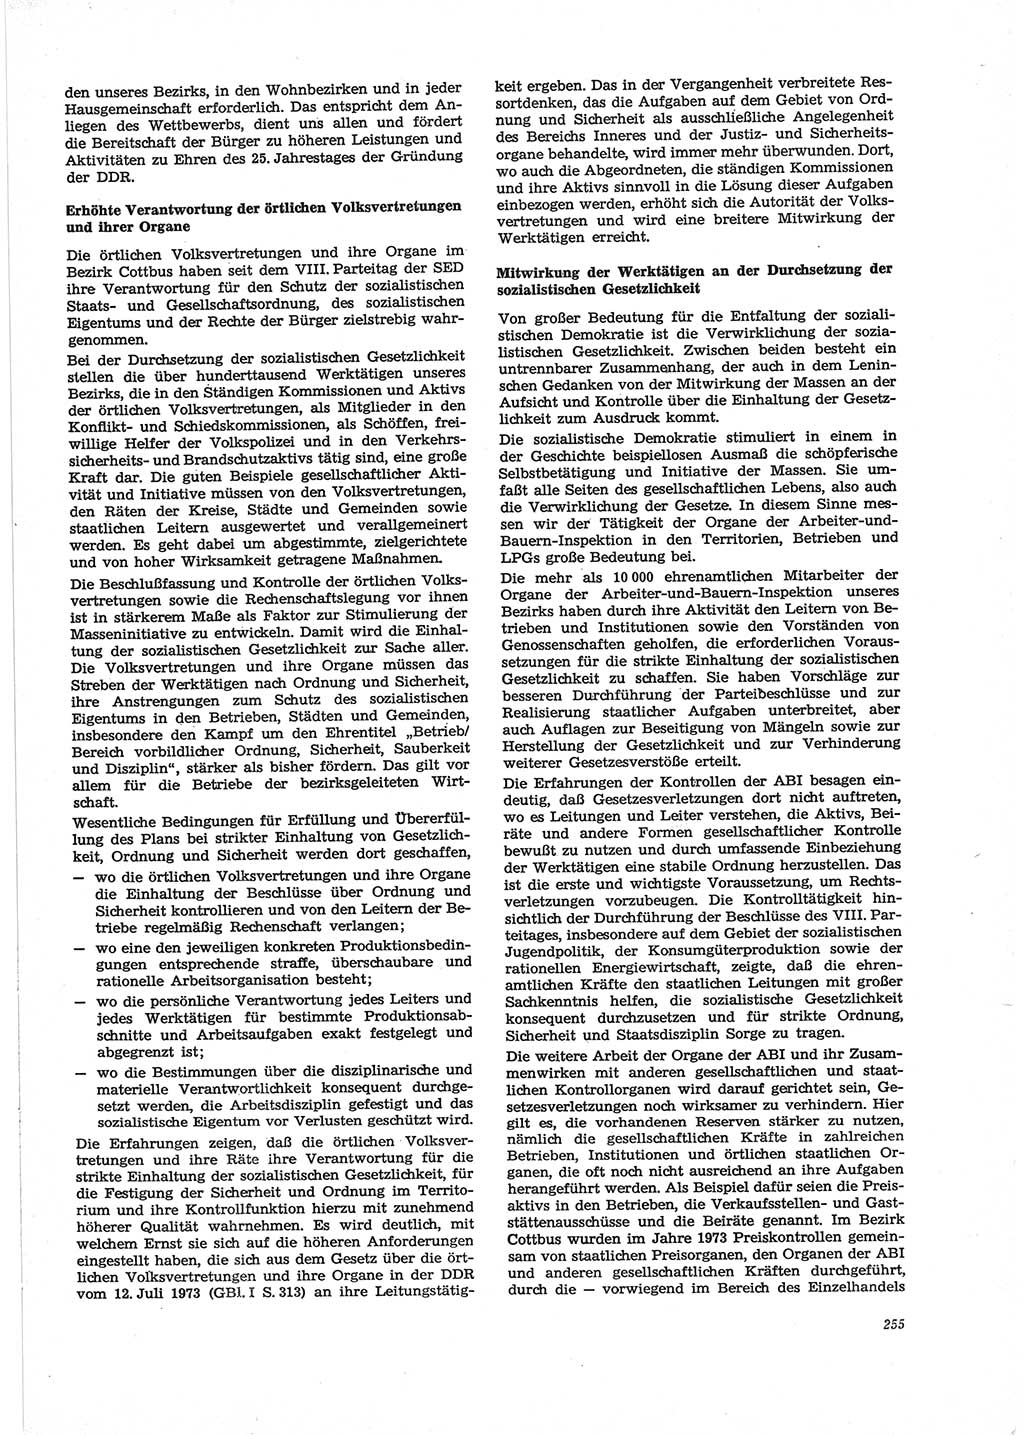 Neue Justiz (NJ), Zeitschrift für Recht und Rechtswissenschaft [Deutsche Demokratische Republik (DDR)], 28. Jahrgang 1974, Seite 255 (NJ DDR 1974, S. 255)